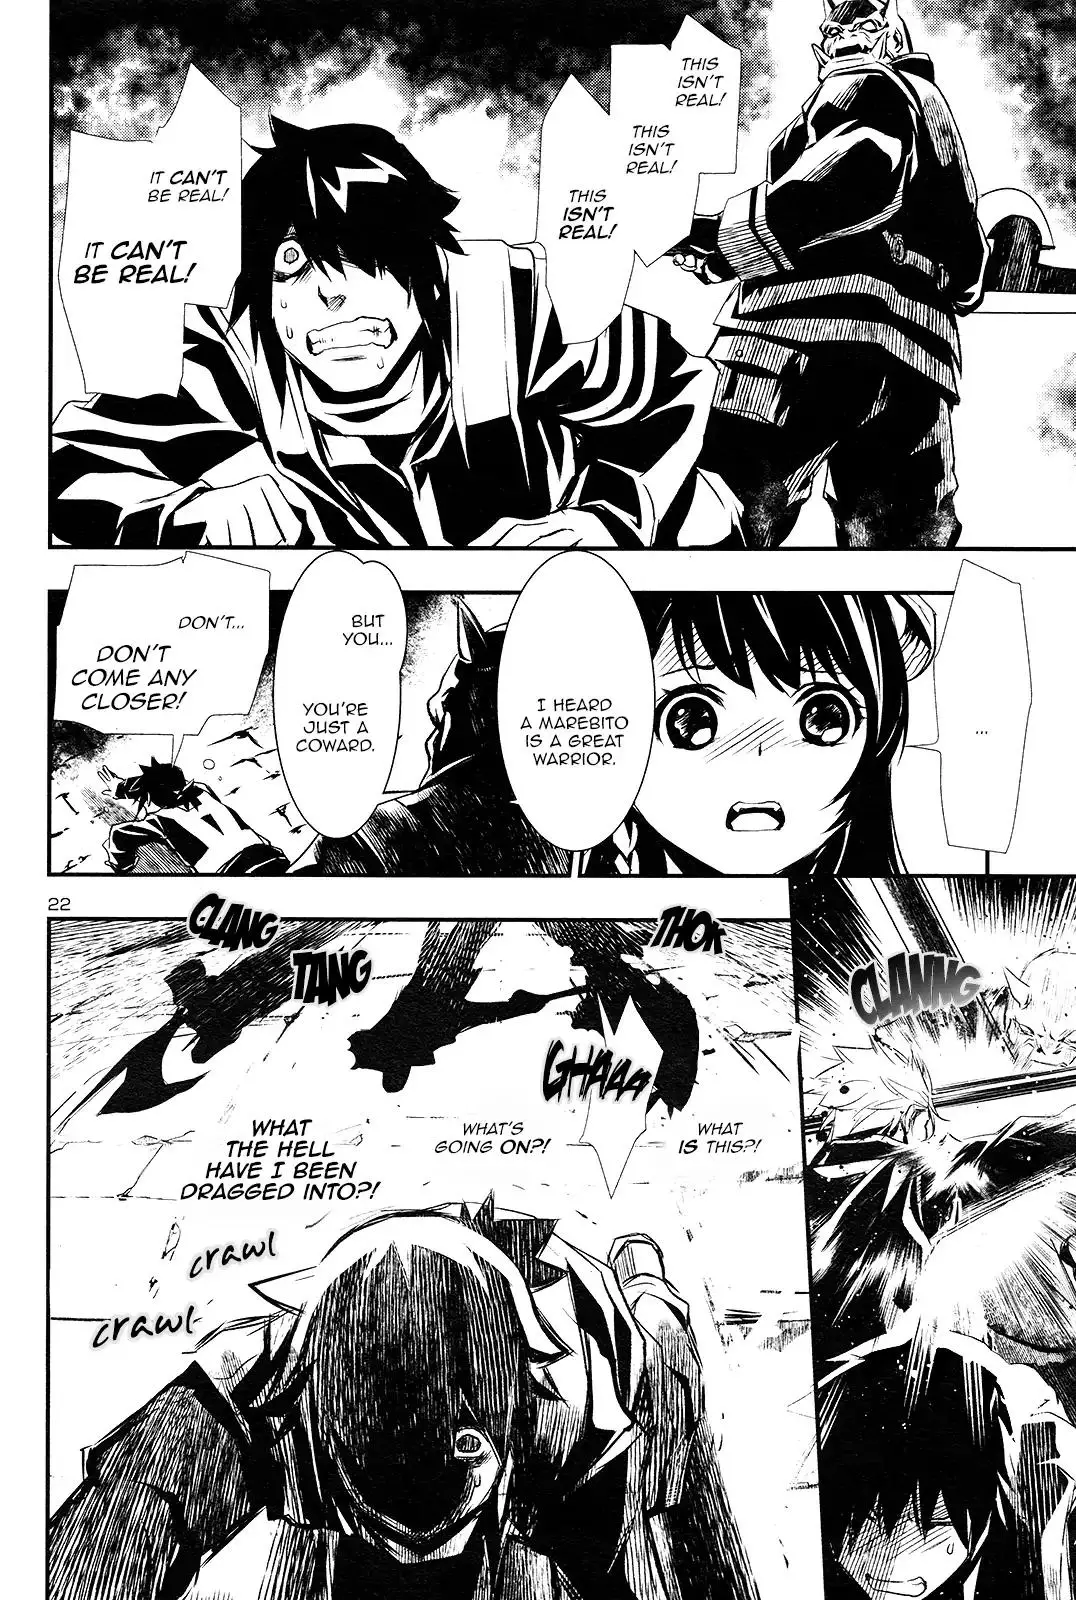 Shinju no Nectar - 1 page 22